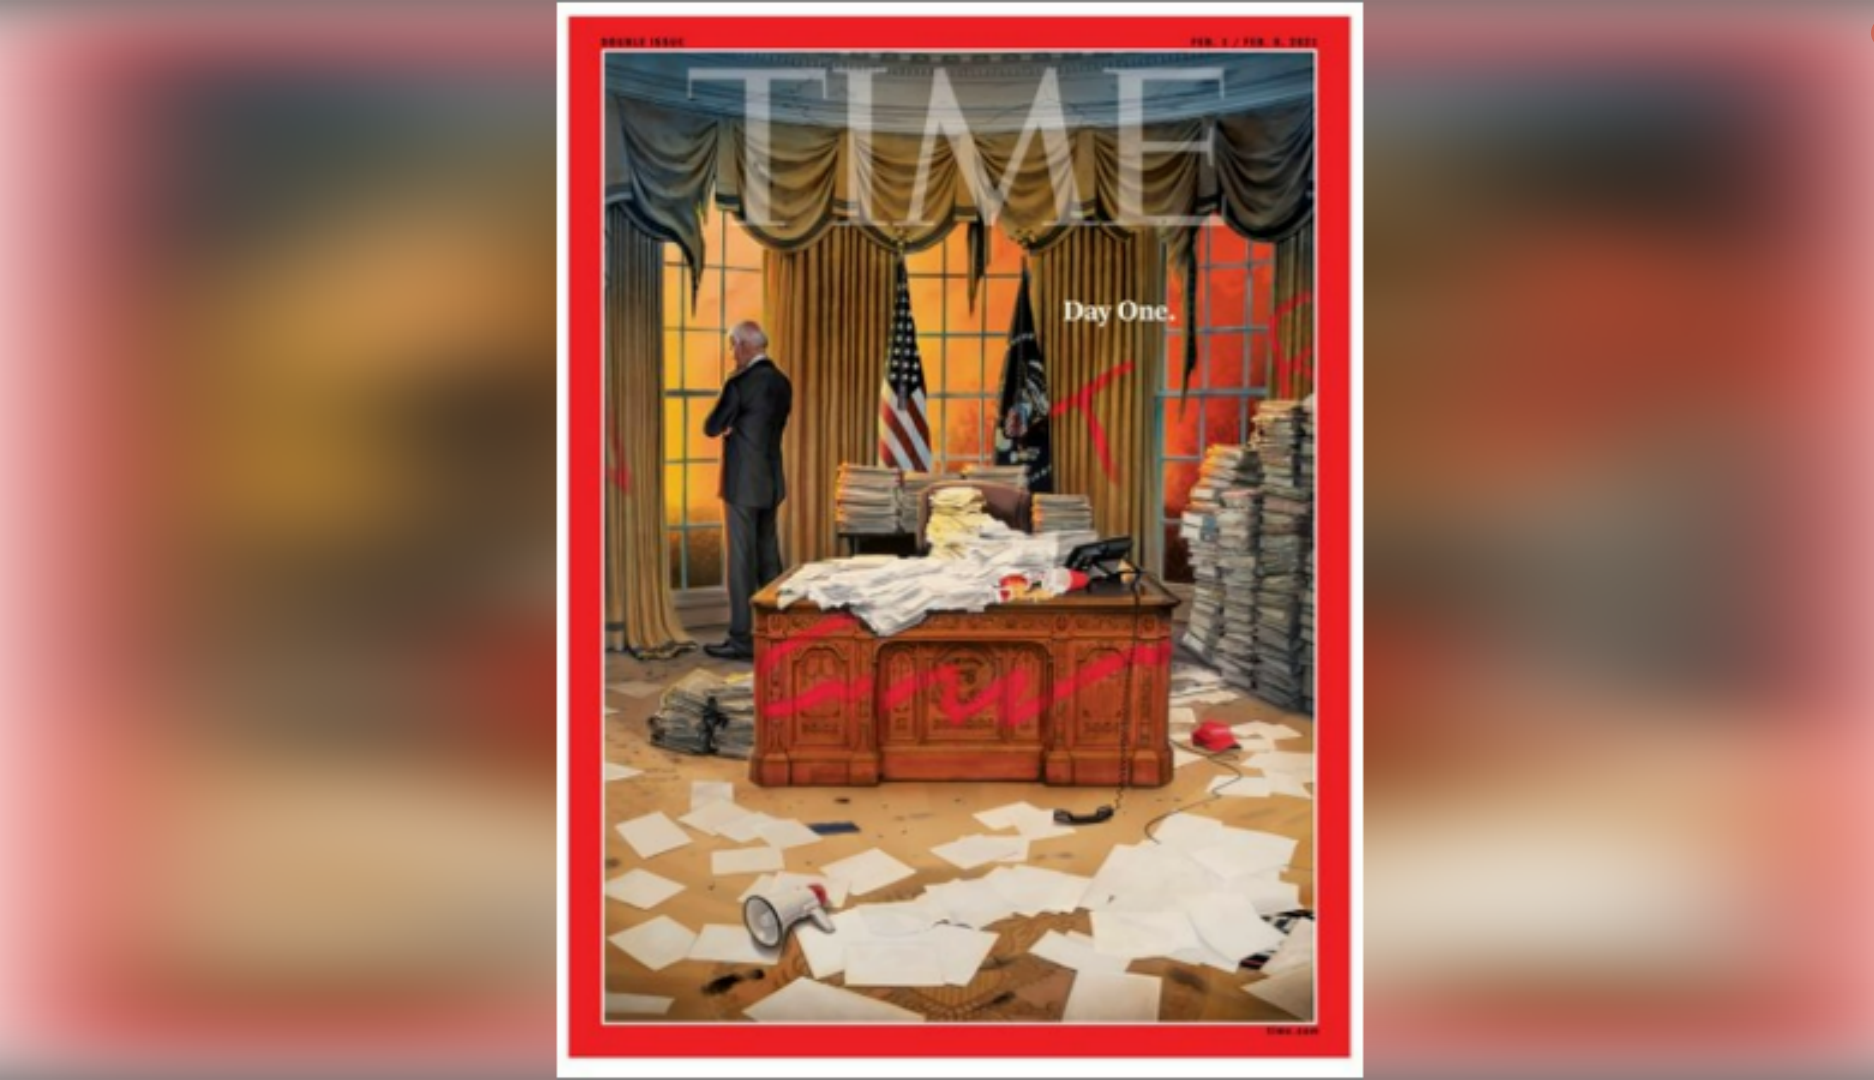 Обложка от 1 февраля 2021 года, на ней изображён беспорядок, с которым Байден столкнулся при вступлении в должность главы Штатов © Time / Тим О'Брайен